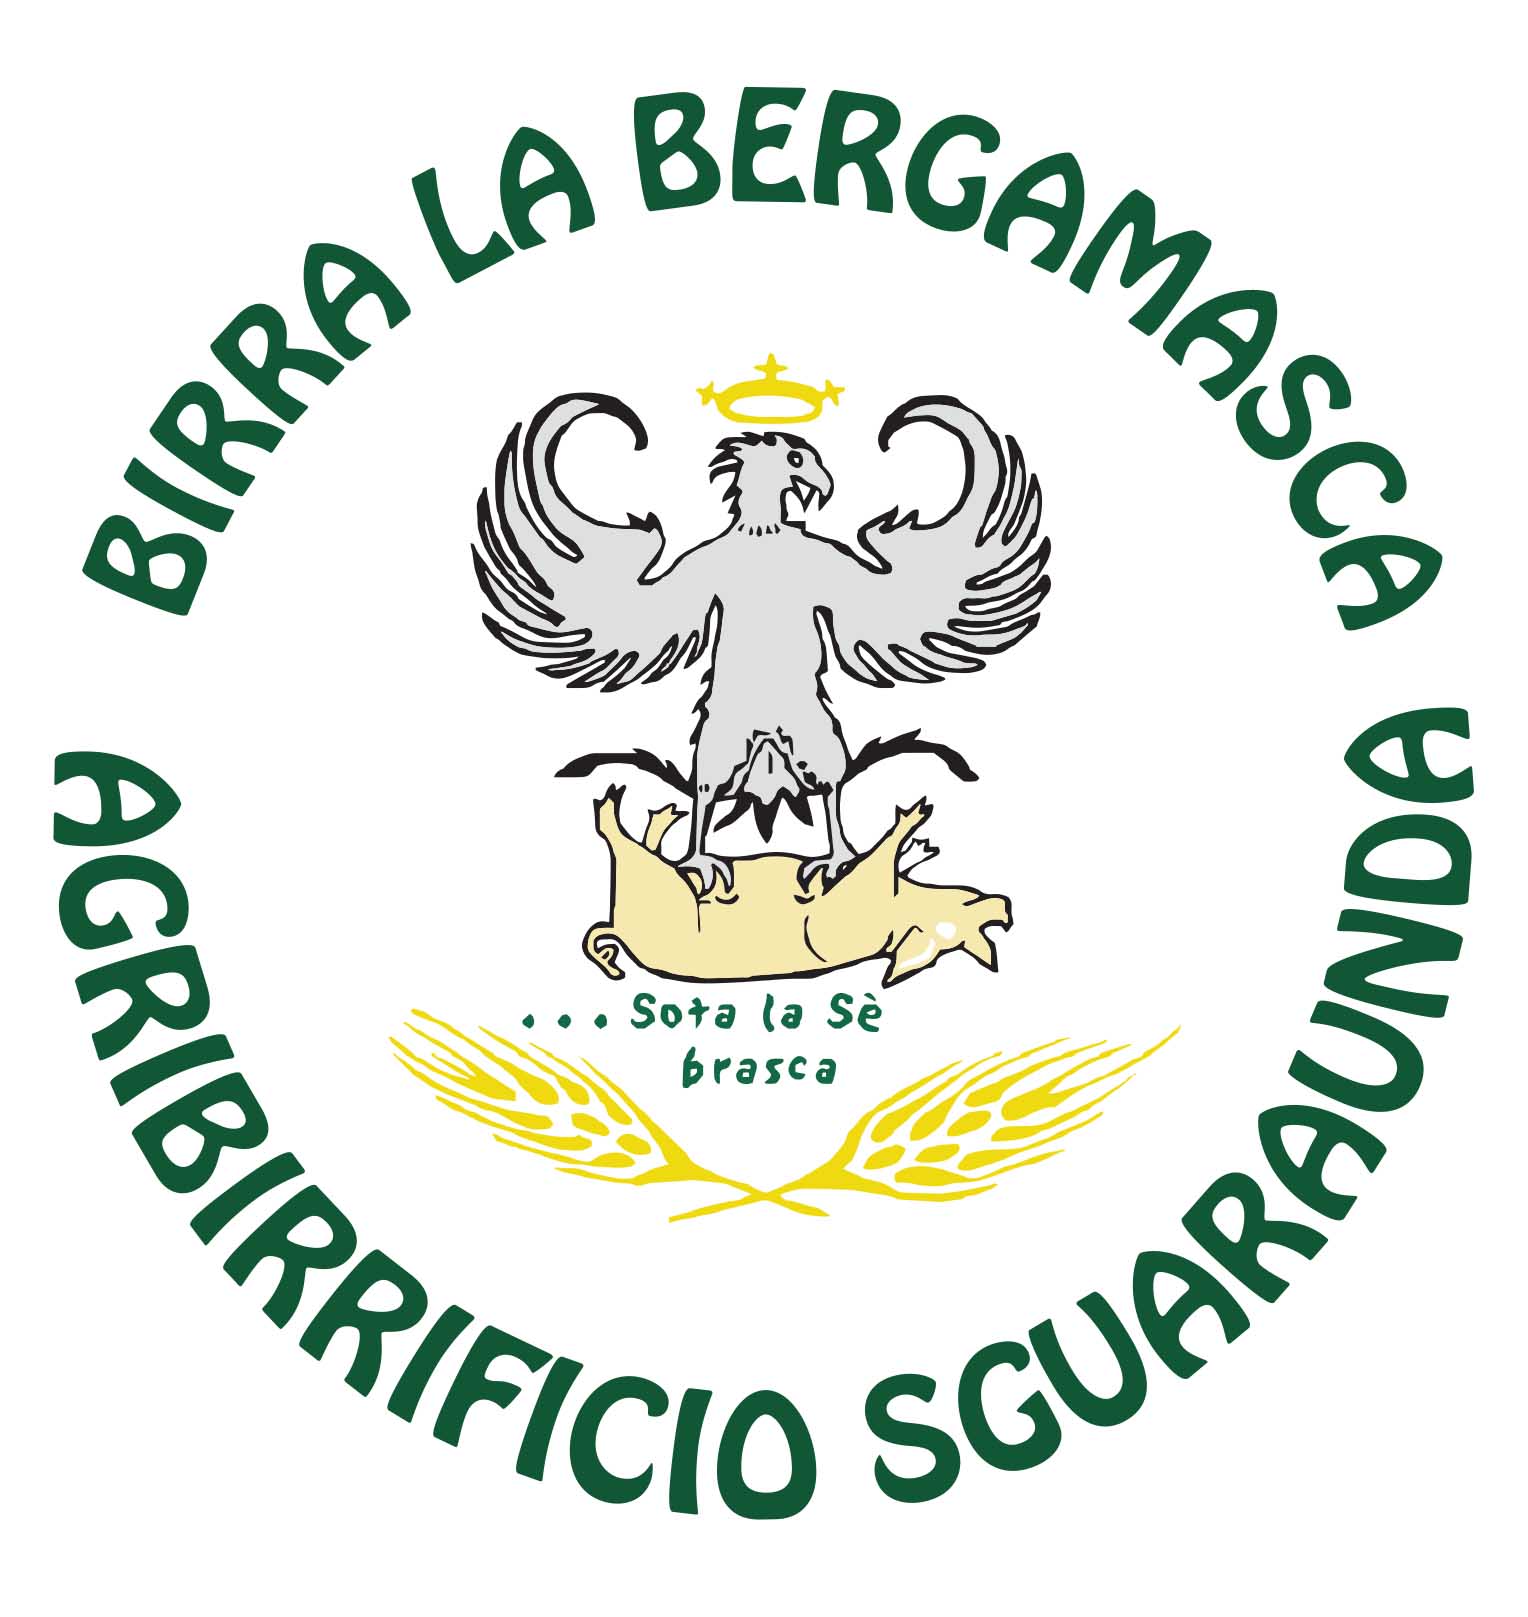 www.birralabergamasca.it